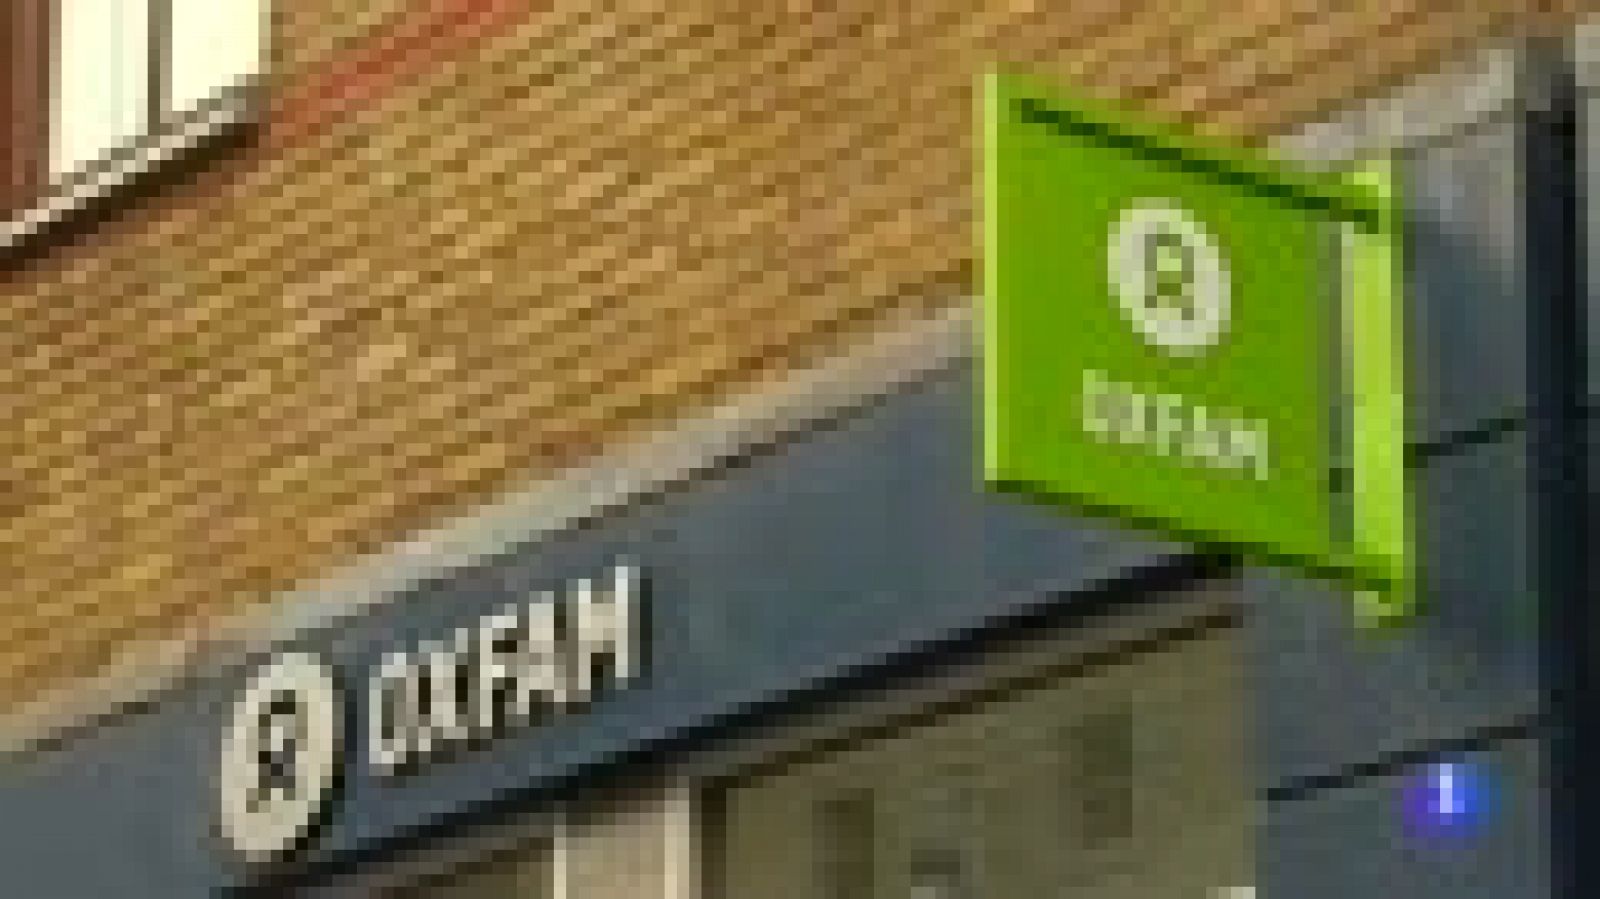 Acoso sexual Oxfam: Oxfam sancionó a cuatro empleados en cinco años por mala conducta sexual 